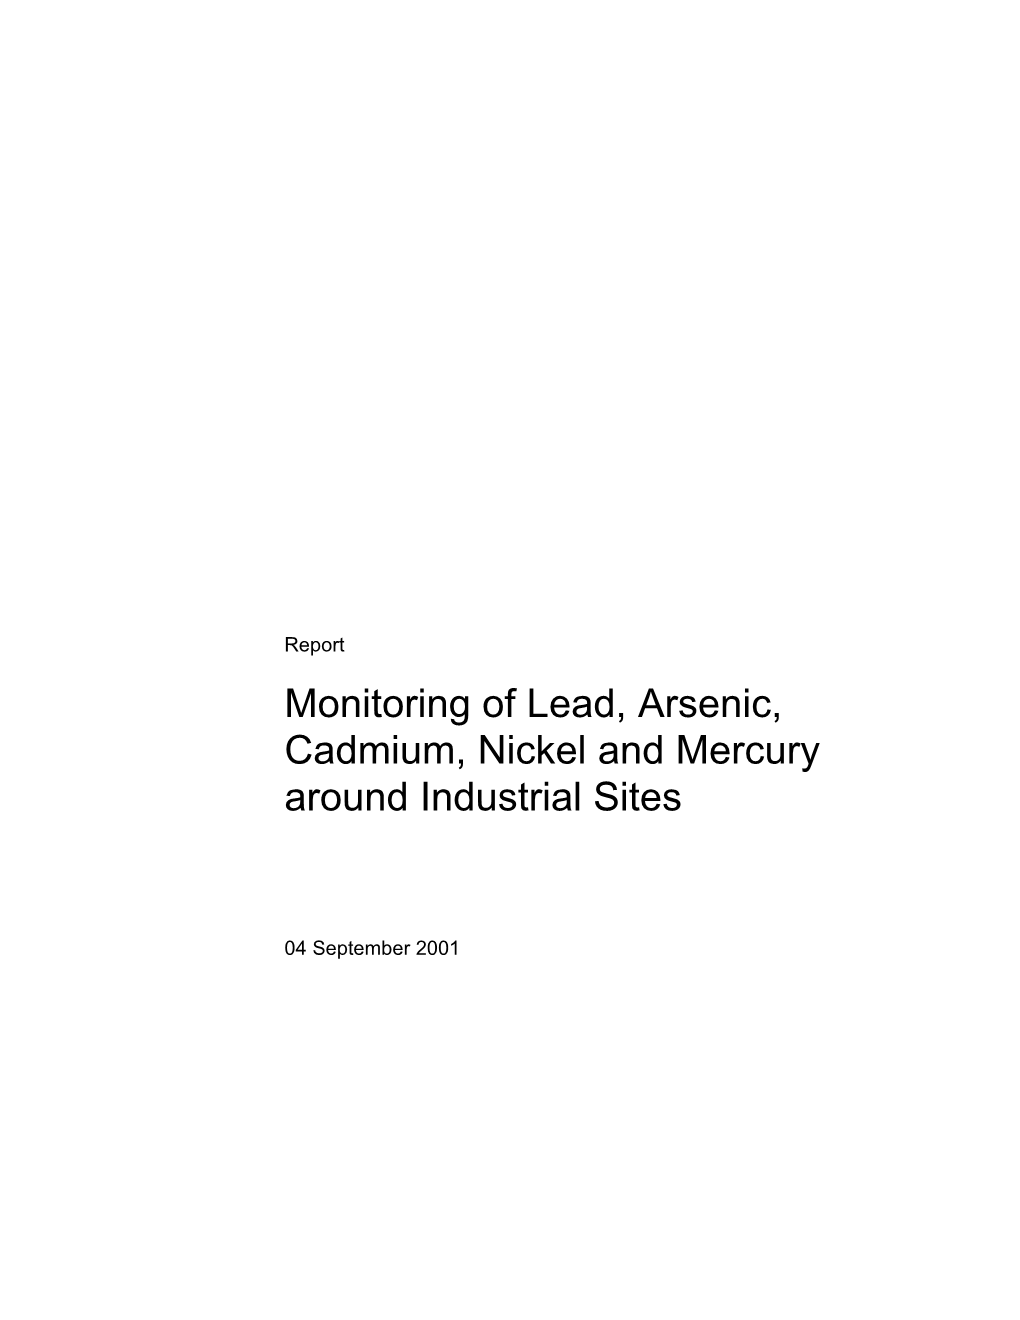 Monitoring of Lead, Arsenic, Cadmium, Nickel and Mercury Around Industrial Sites